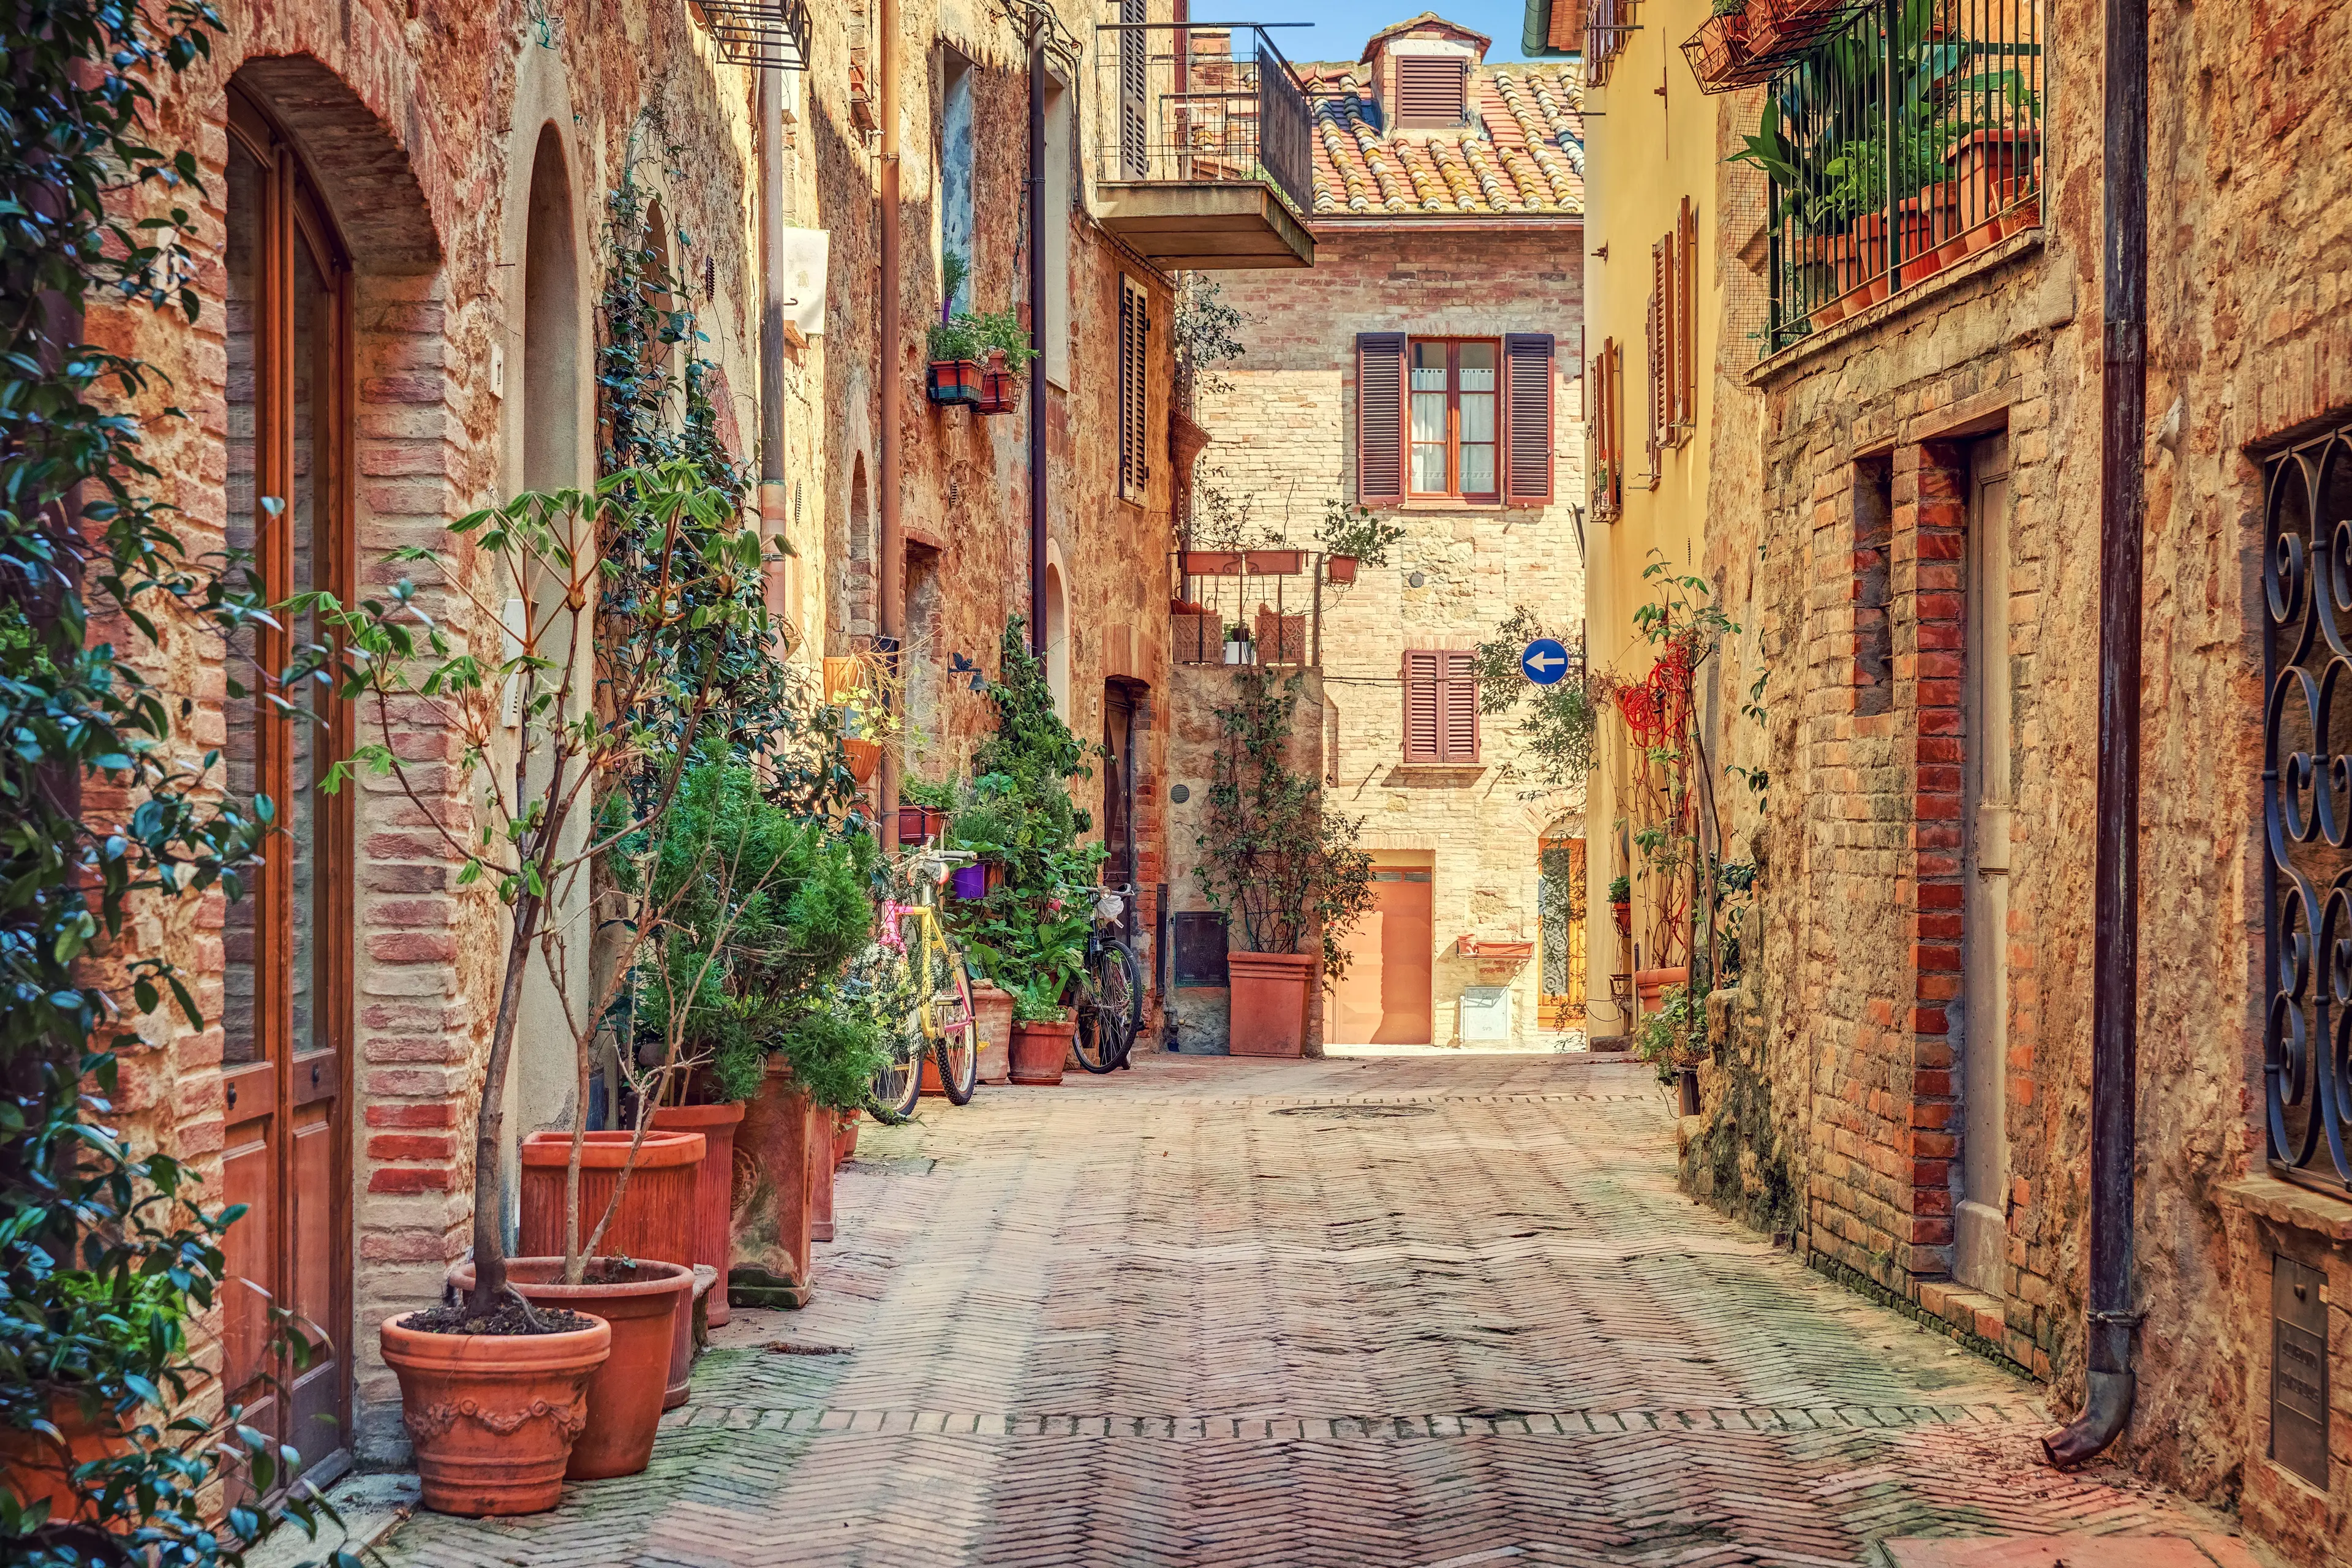 Explore Tuscany, Italy: A Single Day Itinerary